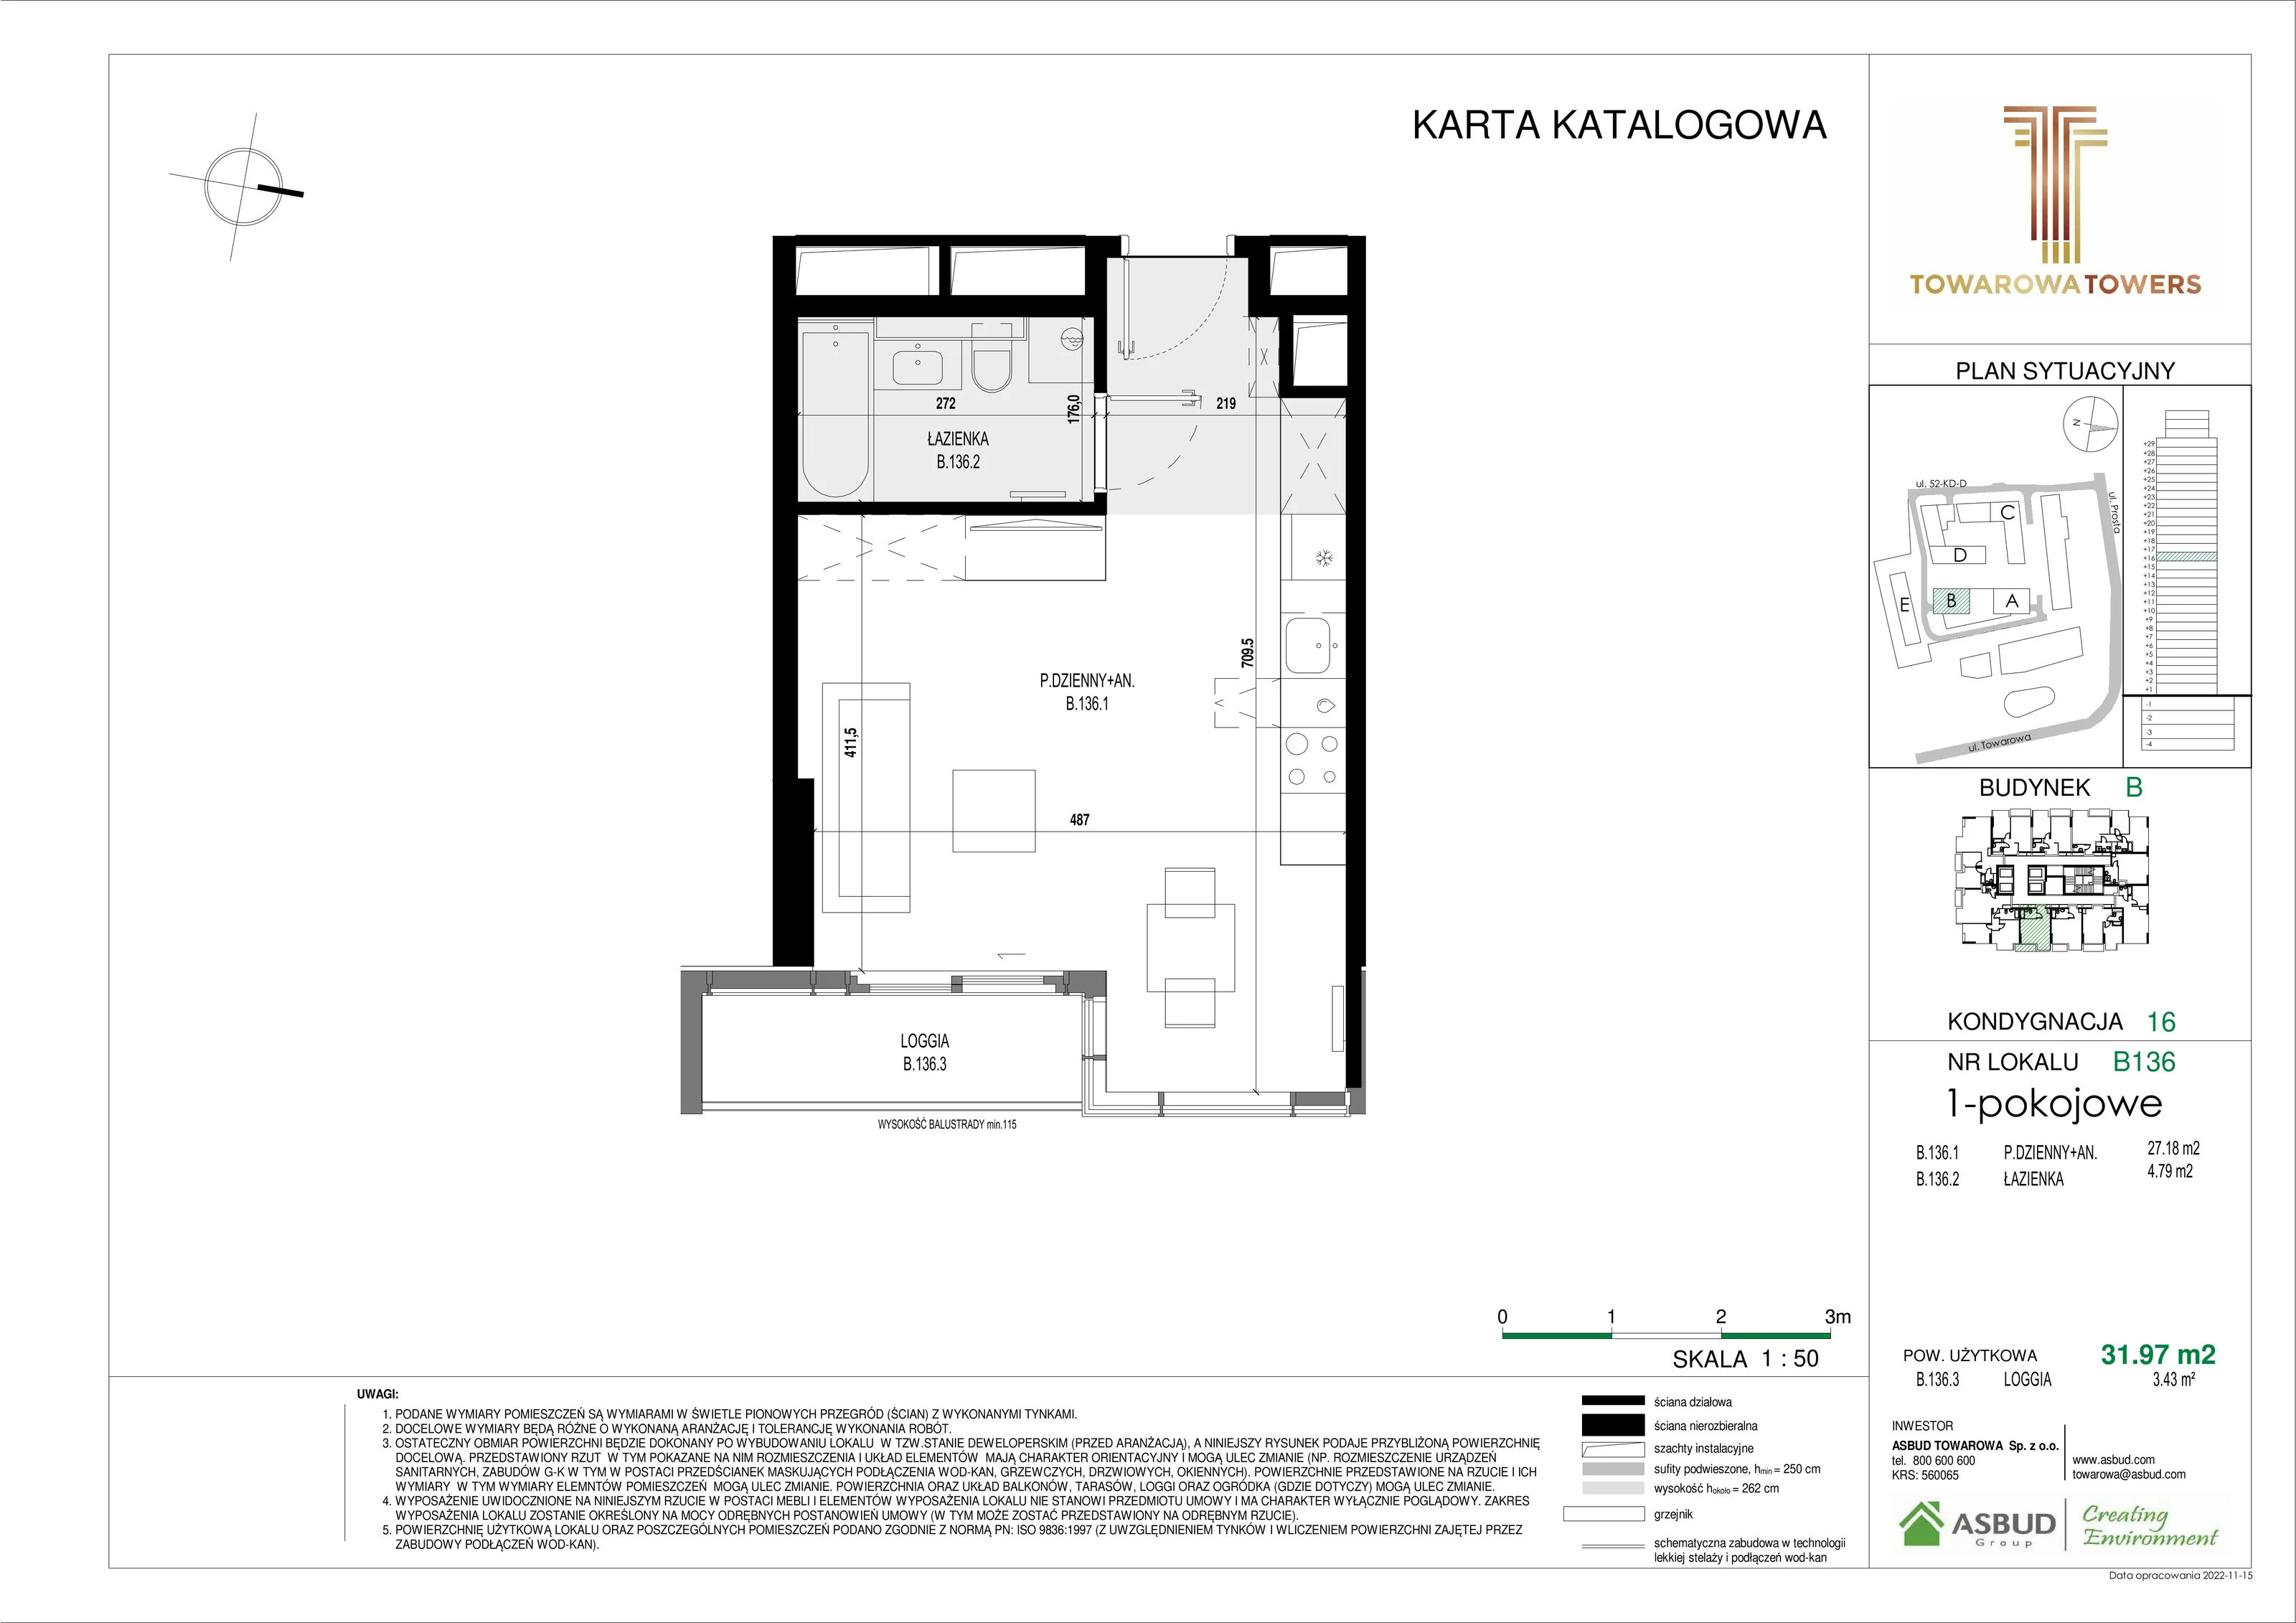 Mieszkanie 31,97 m², piętro 16, oferta nr B.136, Towarowa Towers, Warszawa, Wola, Czyste, ul. Towarowa